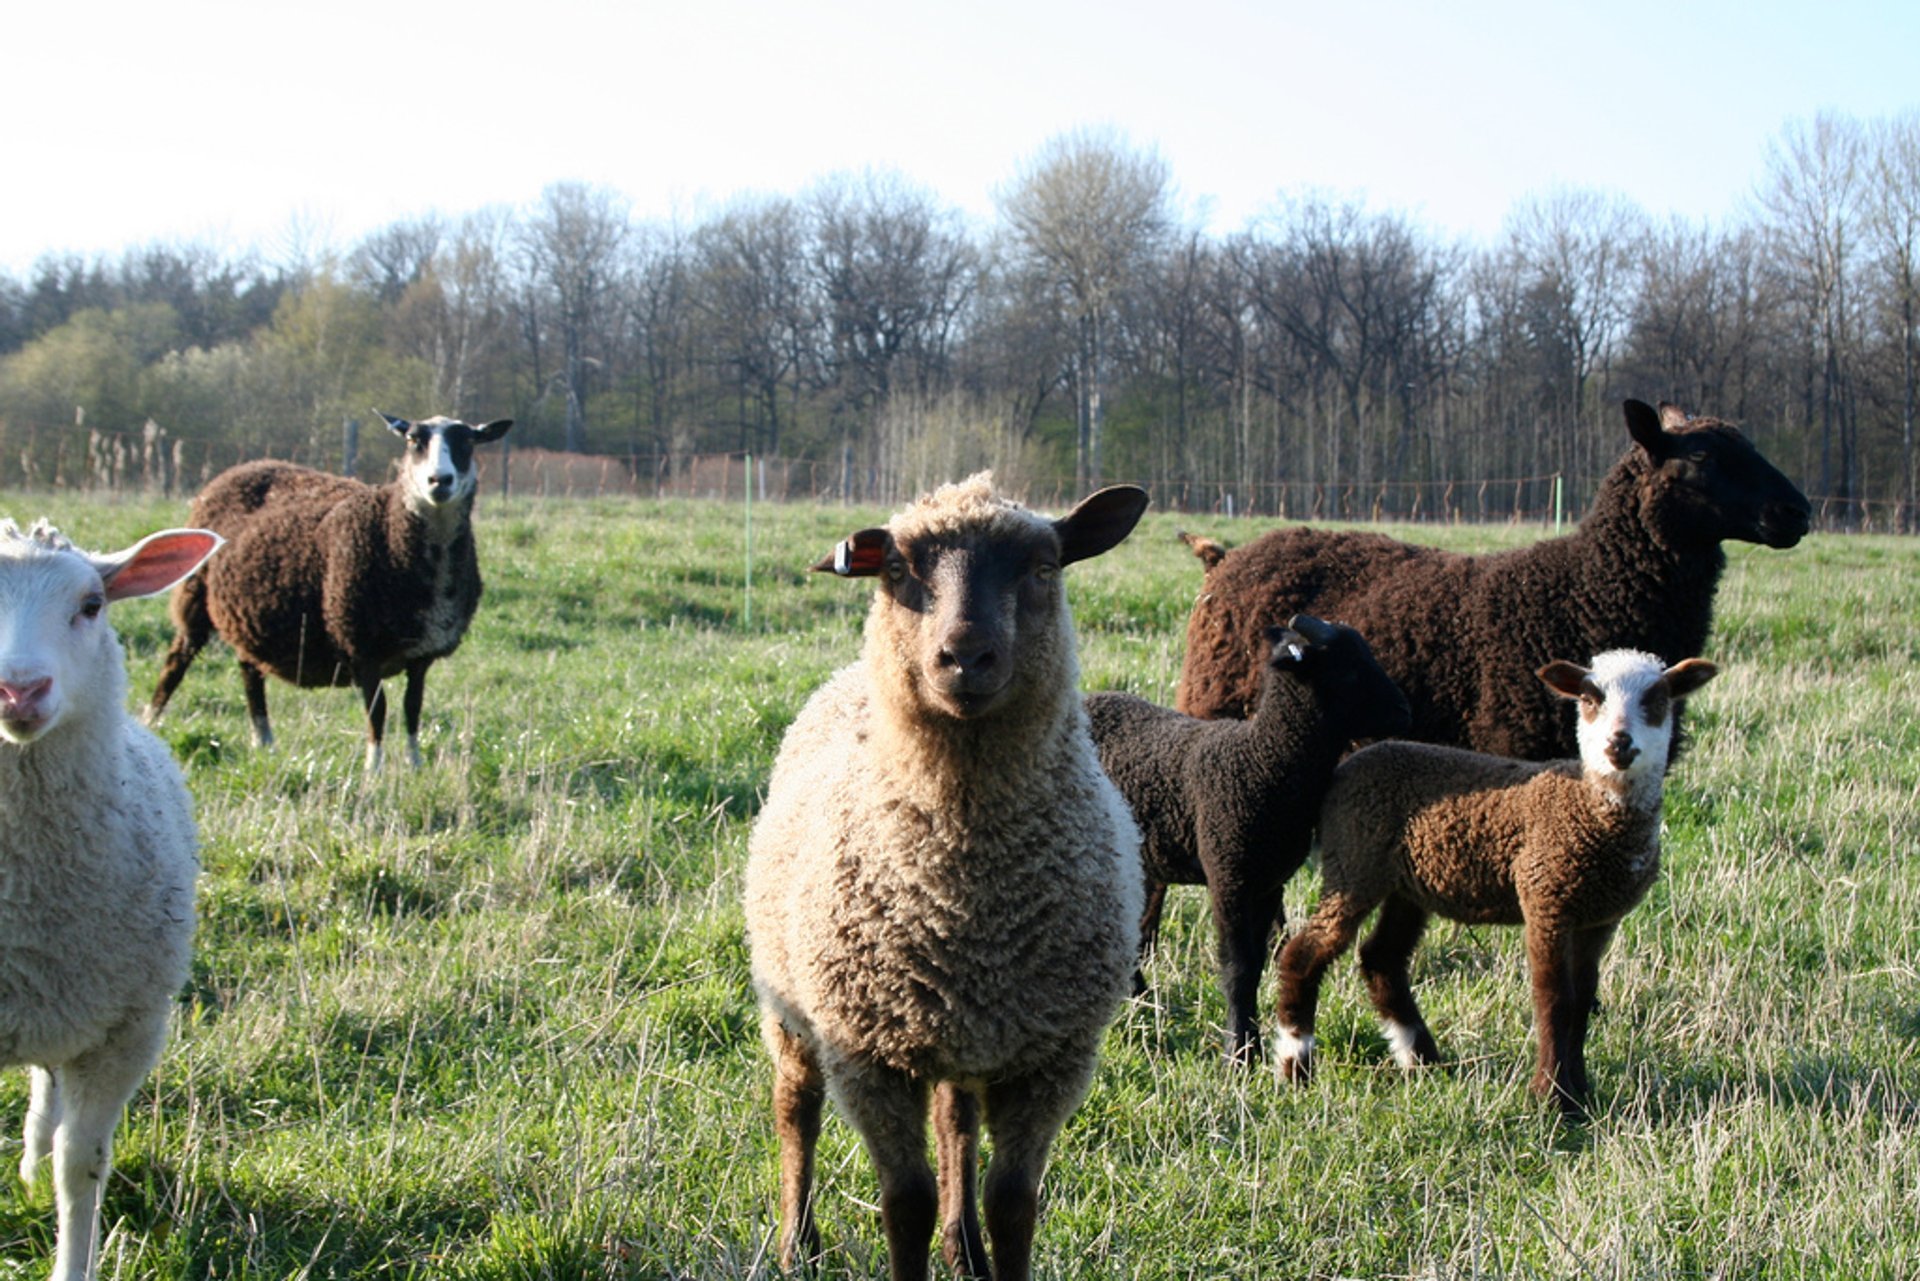 Gotland Pelt Sheep